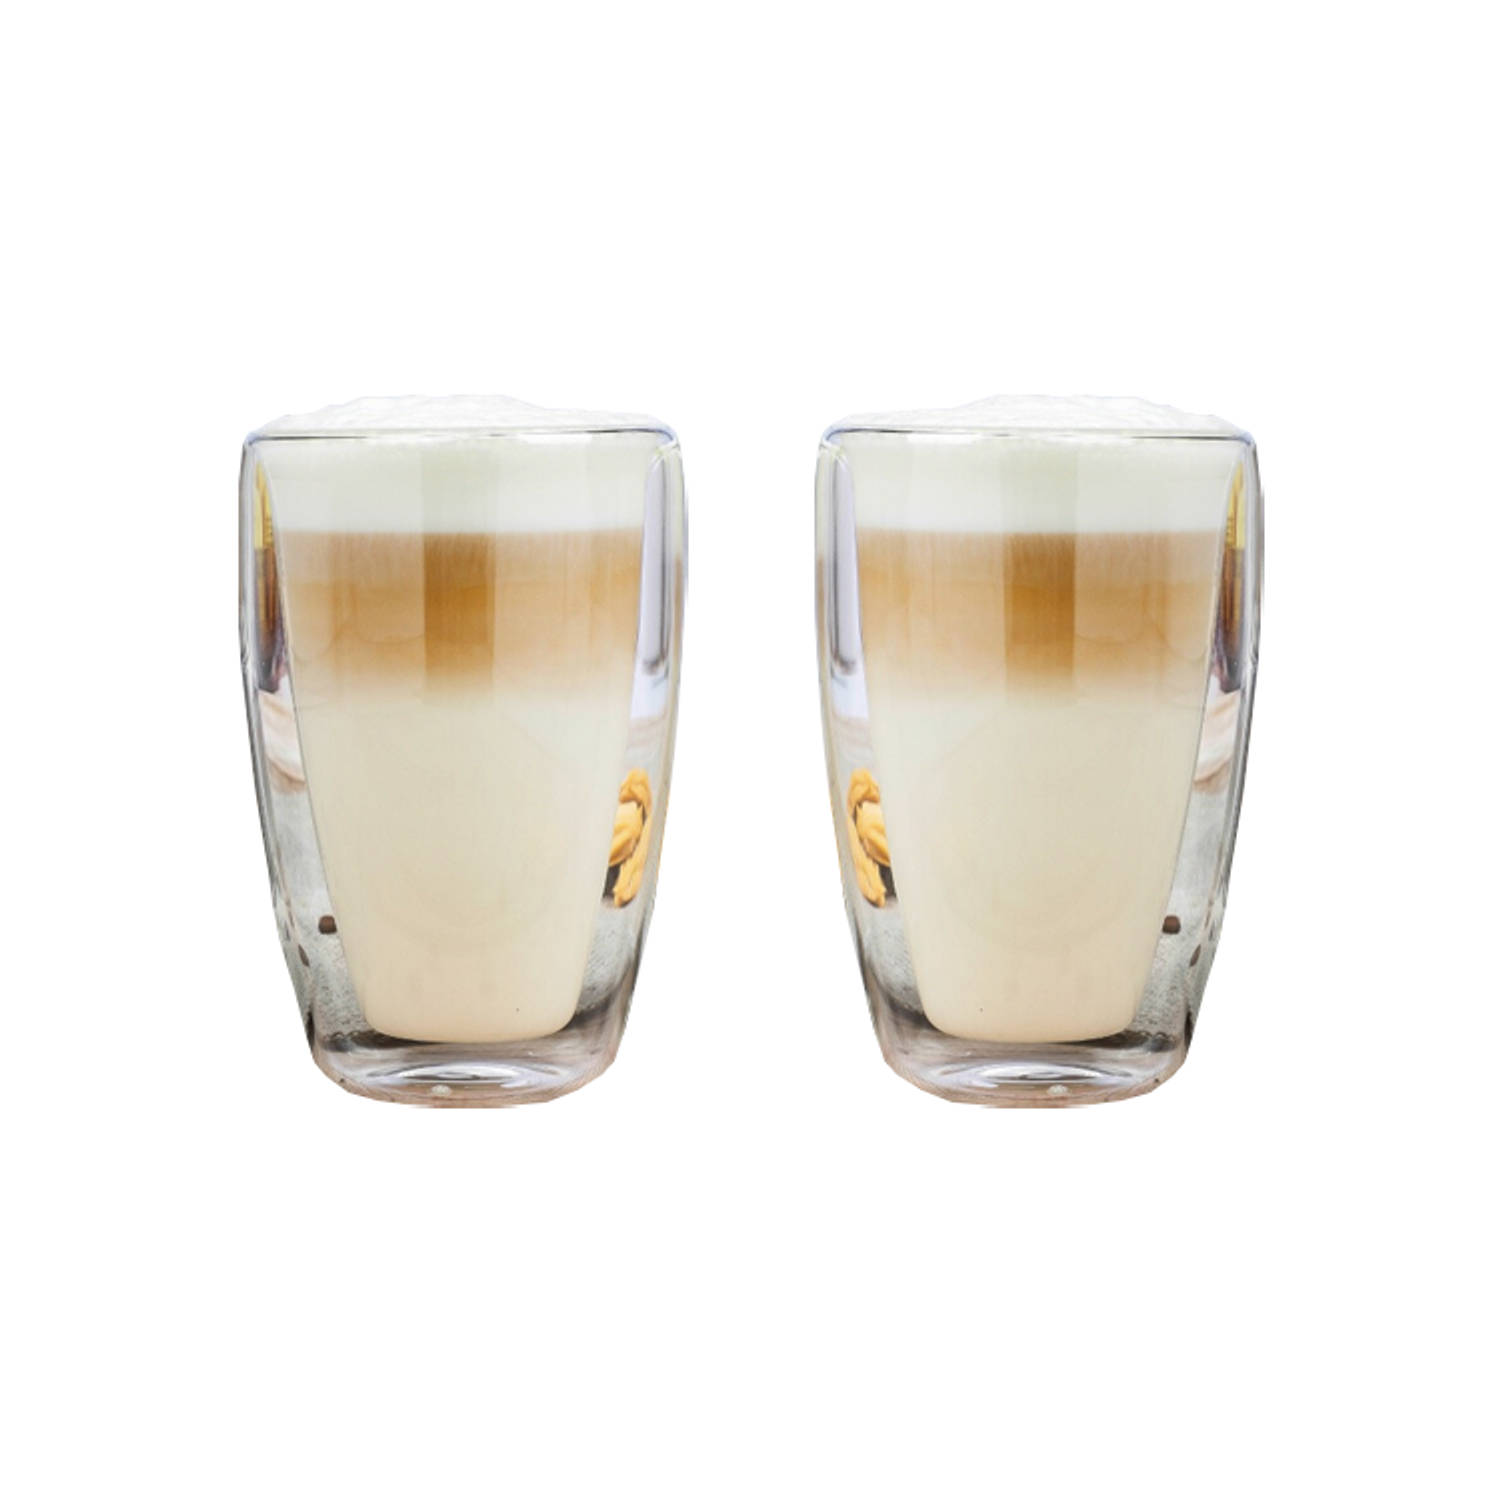 Gestaag Berg kleding op Vakantie Premium Latte Macchiato glazen - 2 Stuks | Blokker